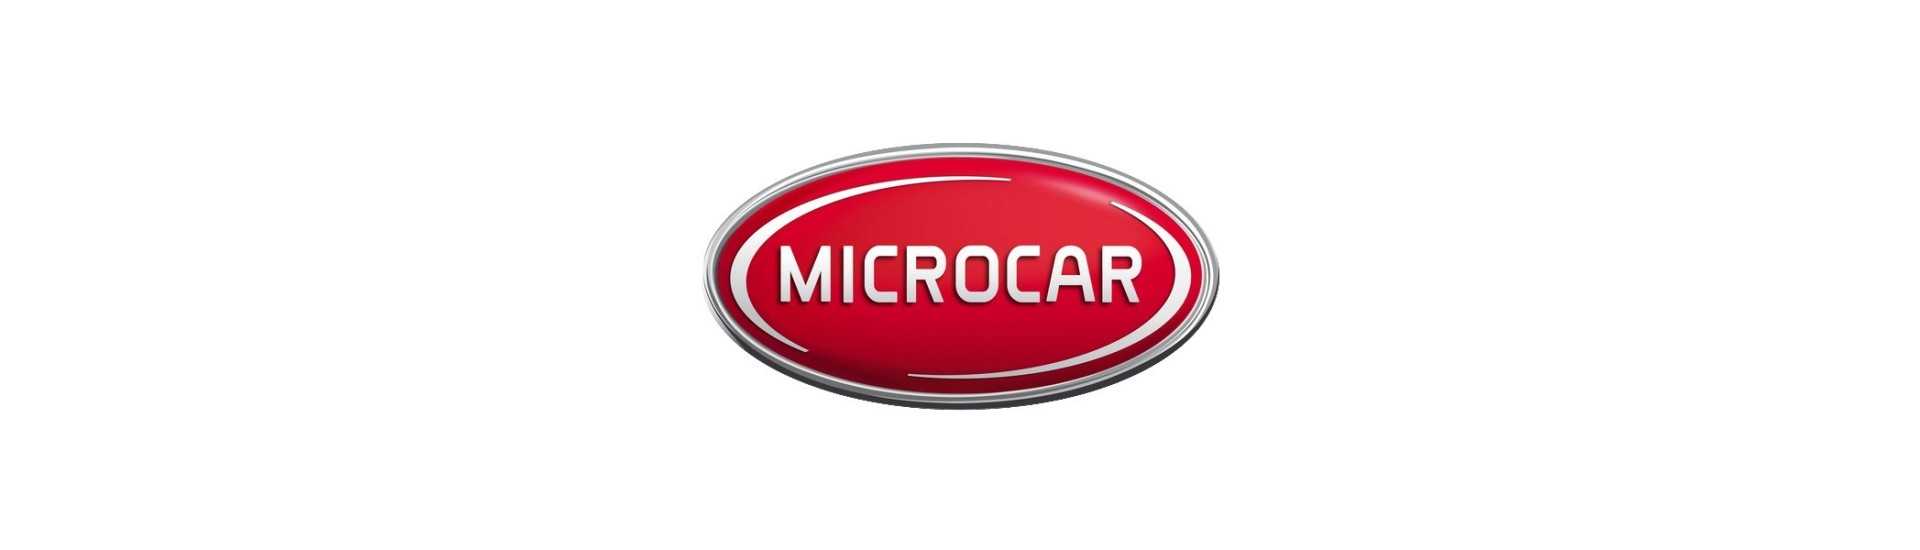 Bromskäken till bästa prisbil utan tillstånd Microcar